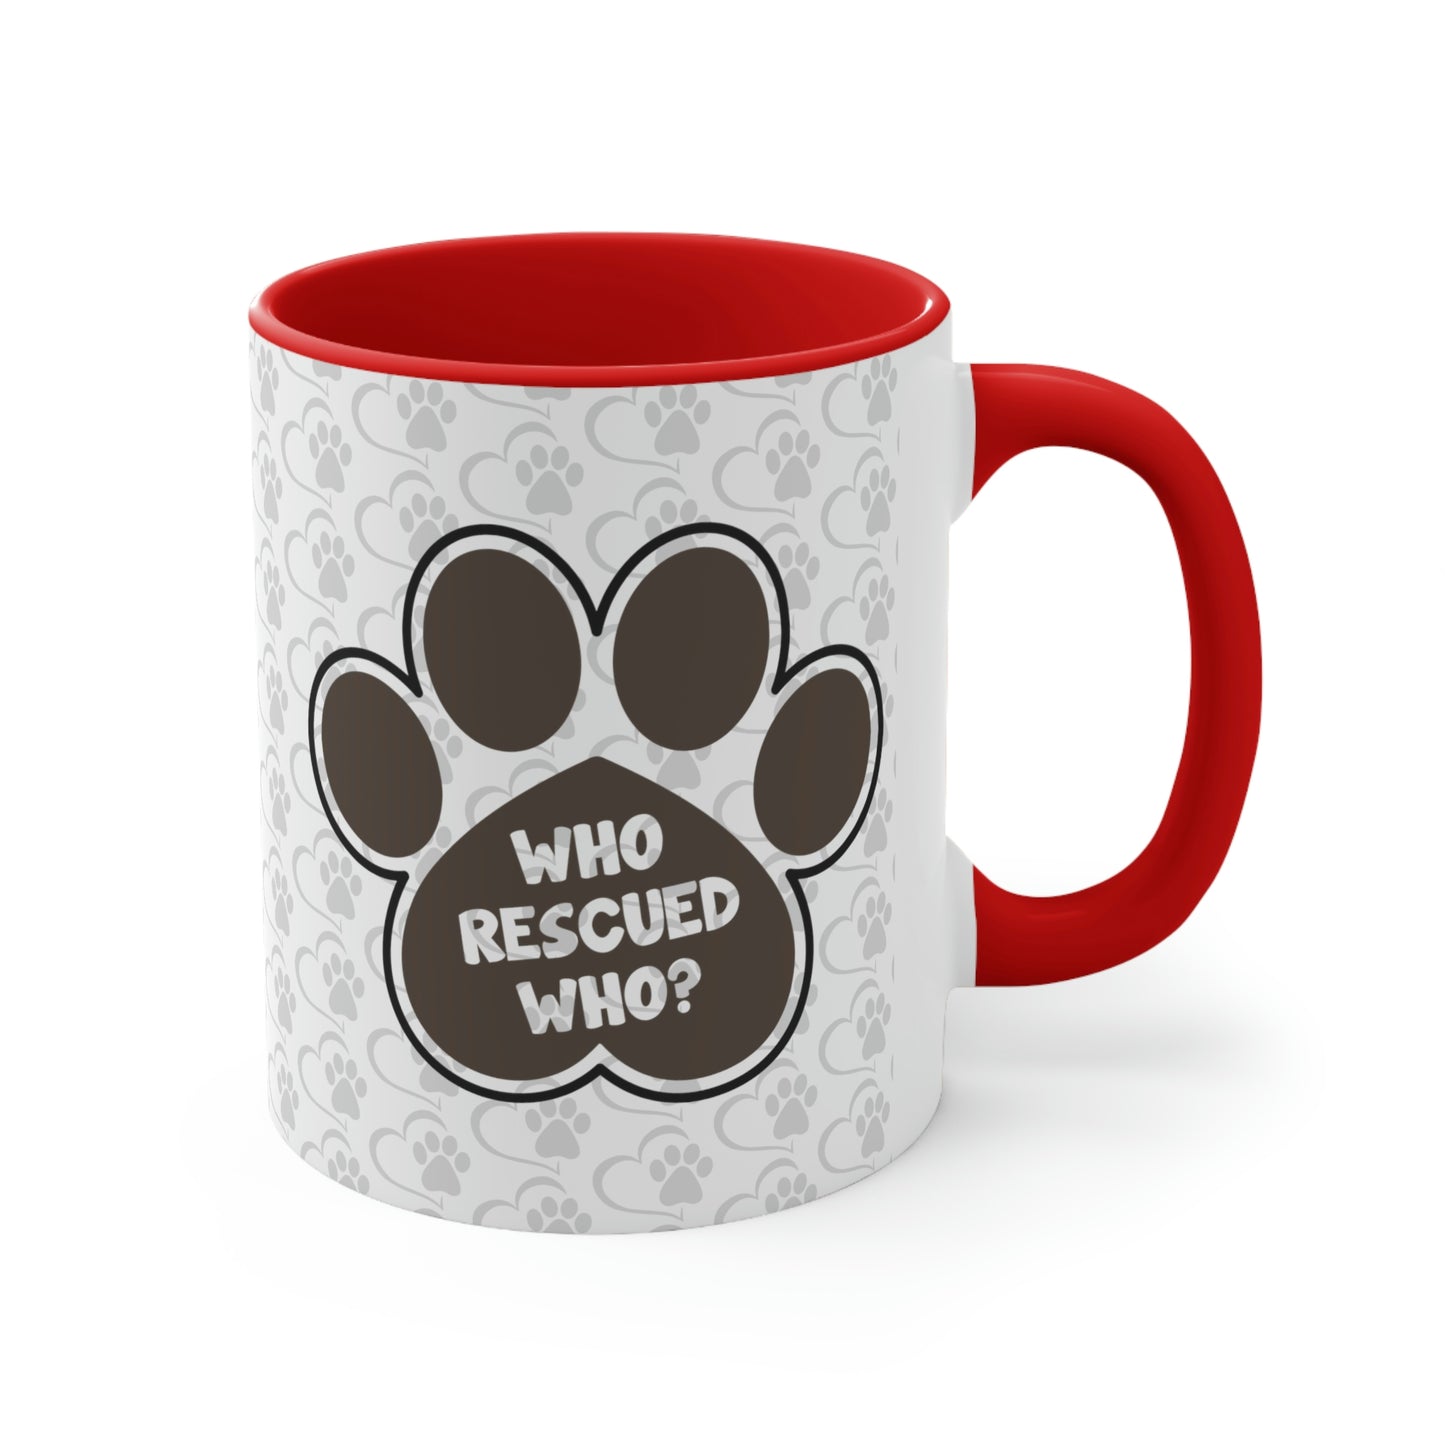 Who Rescued Who? Coffee Mug, 11oz